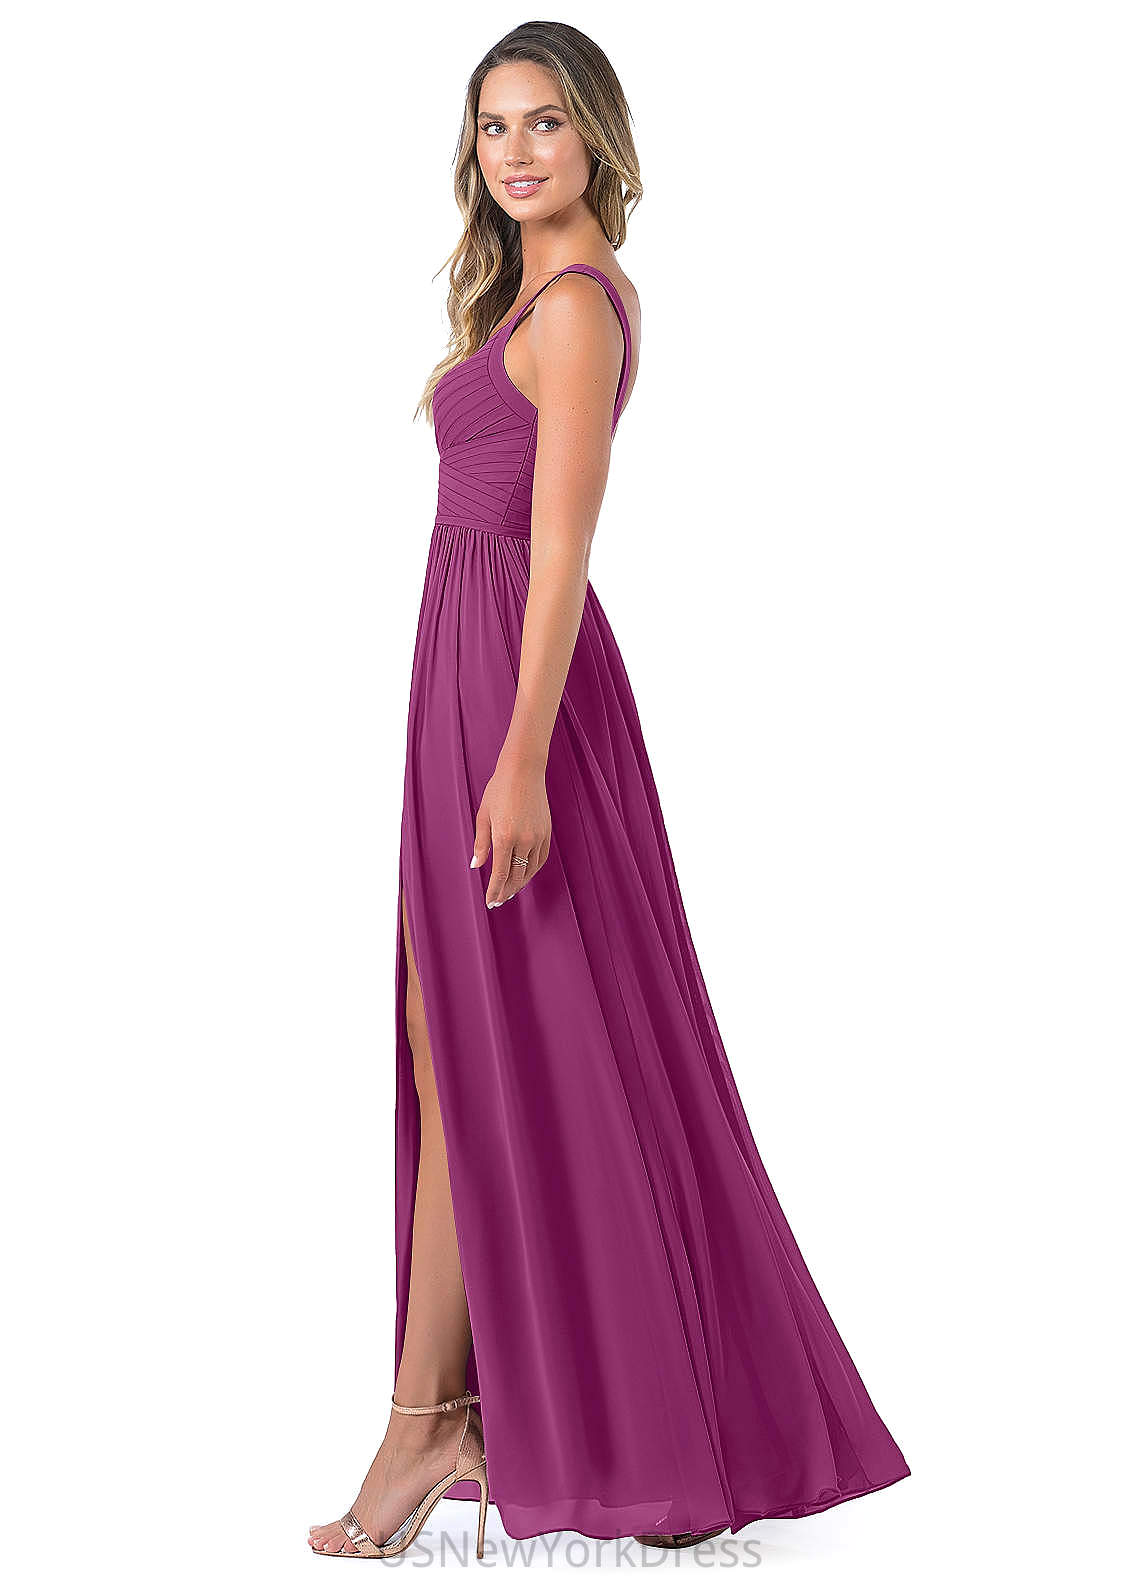 Sage V-Neck Sleeveless High Low A-Line/Princess Natural Waist Bridesmaid Dresses